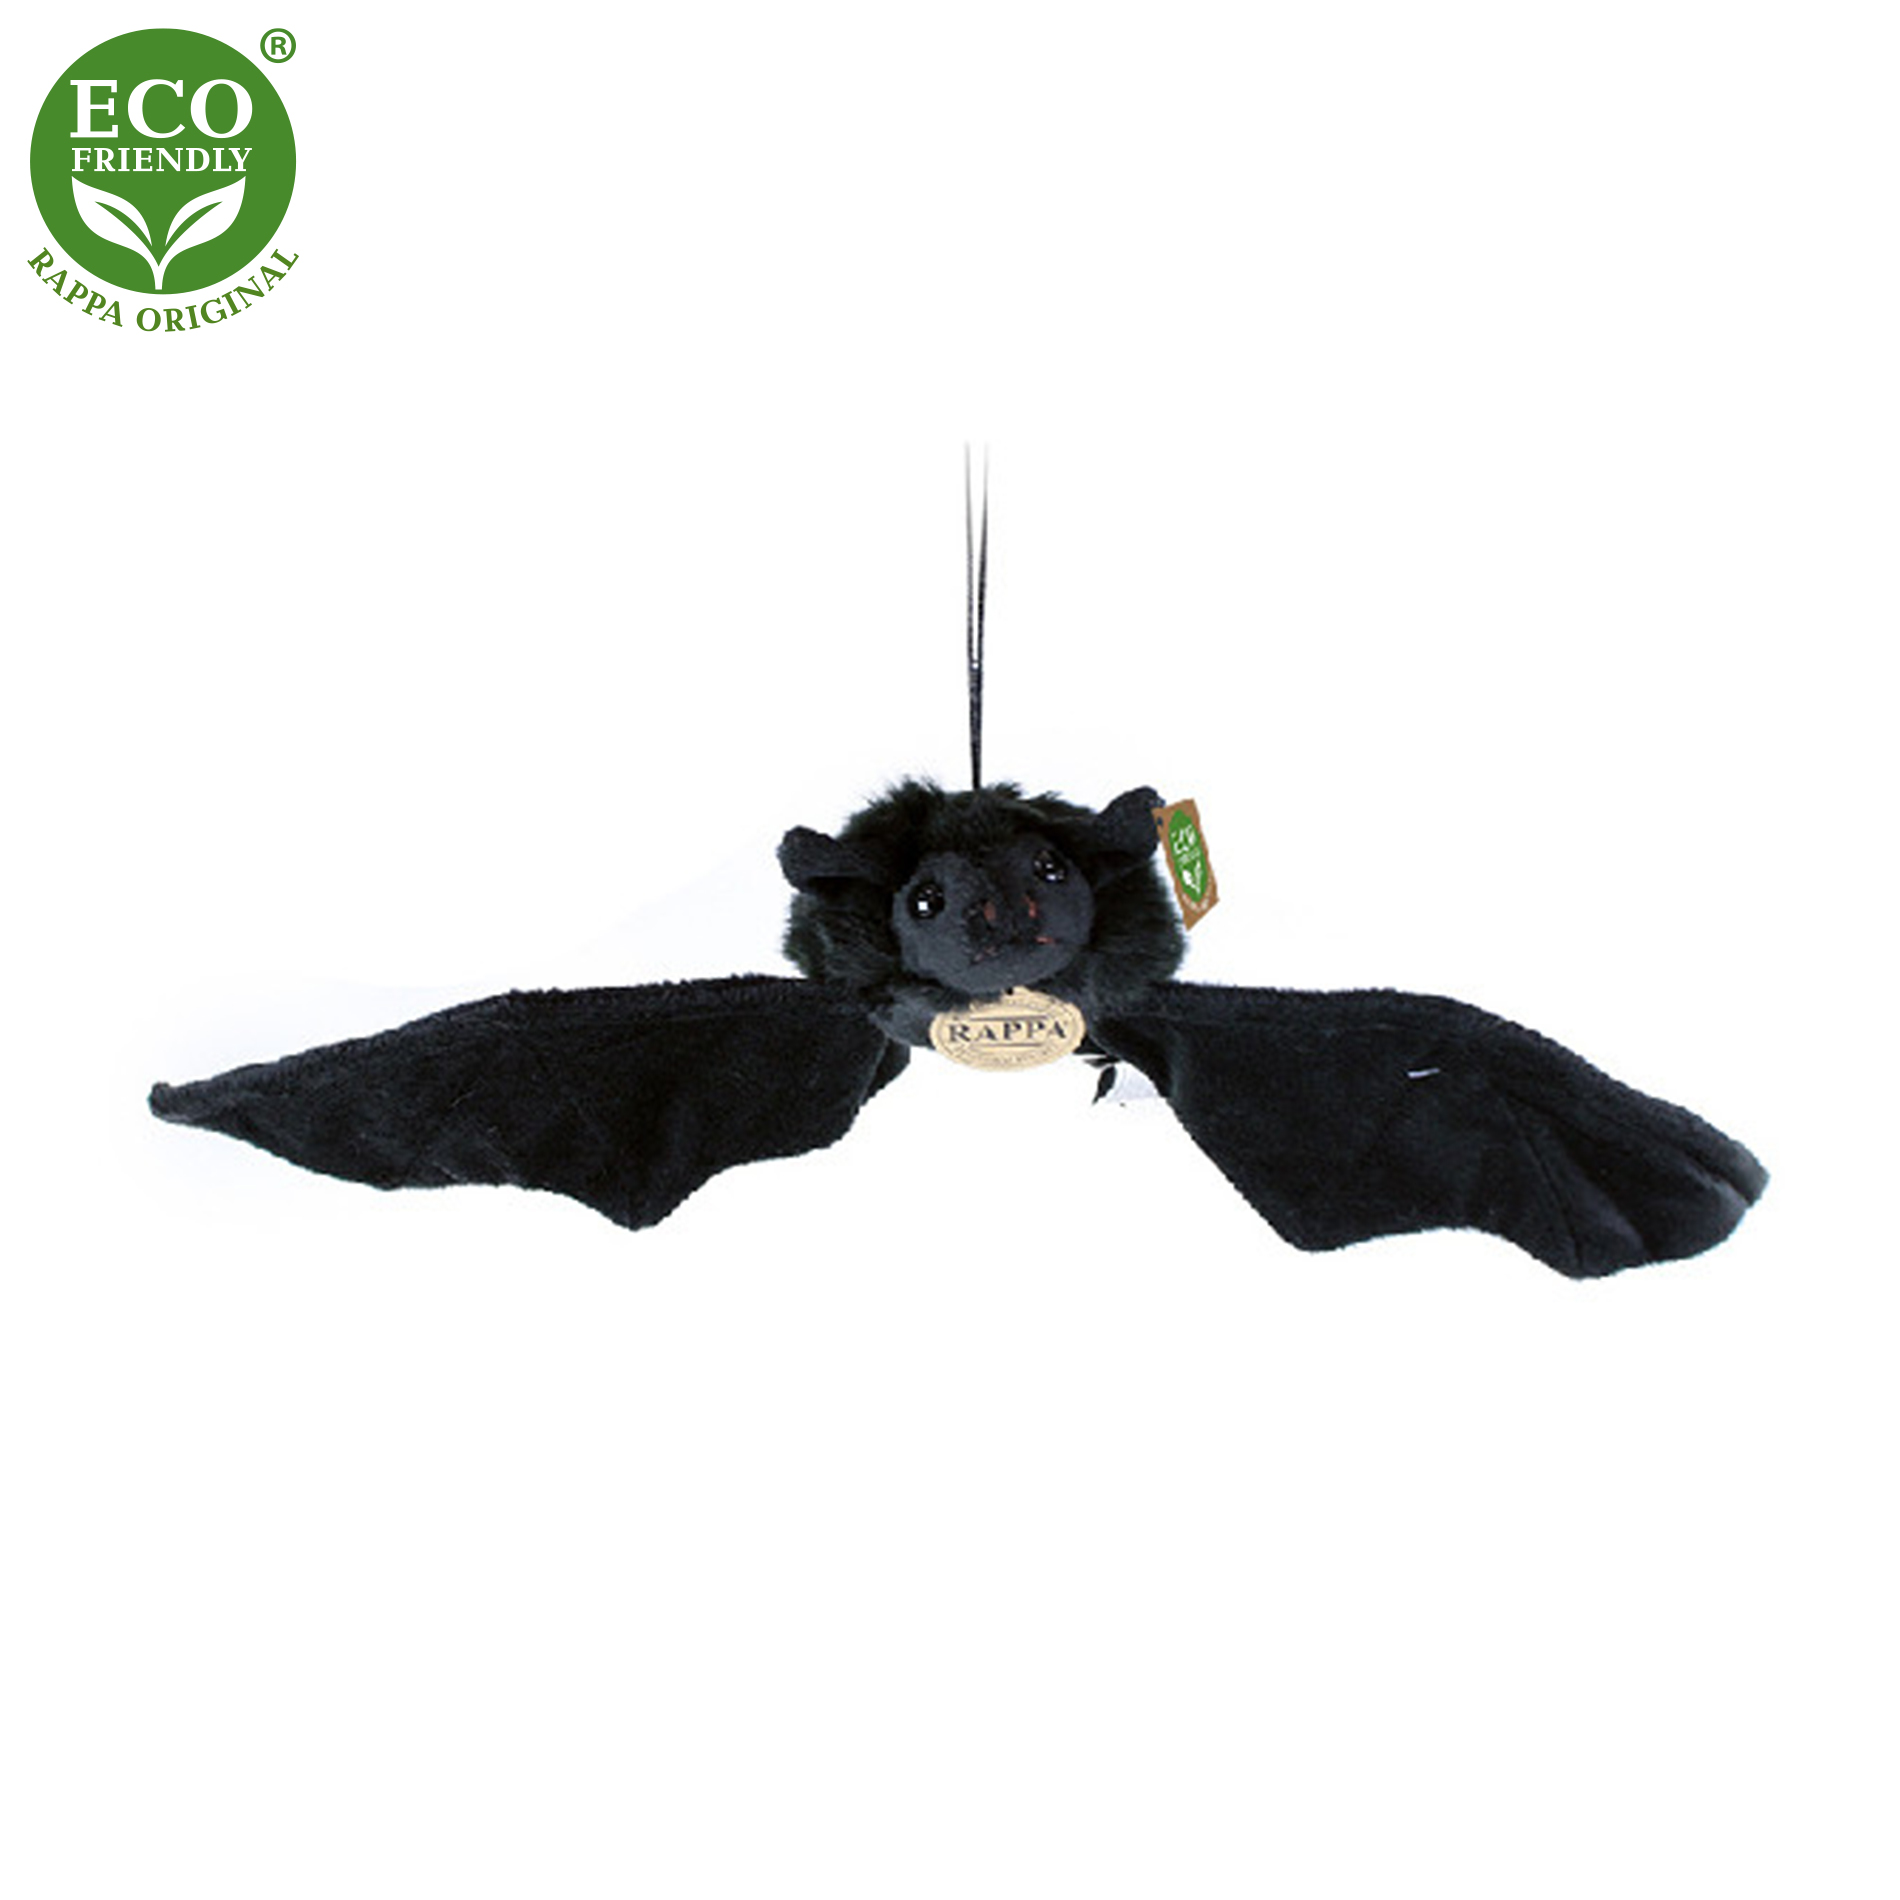 Rappa Eco-Friendly - Plyšový netopýr černý 16 cm